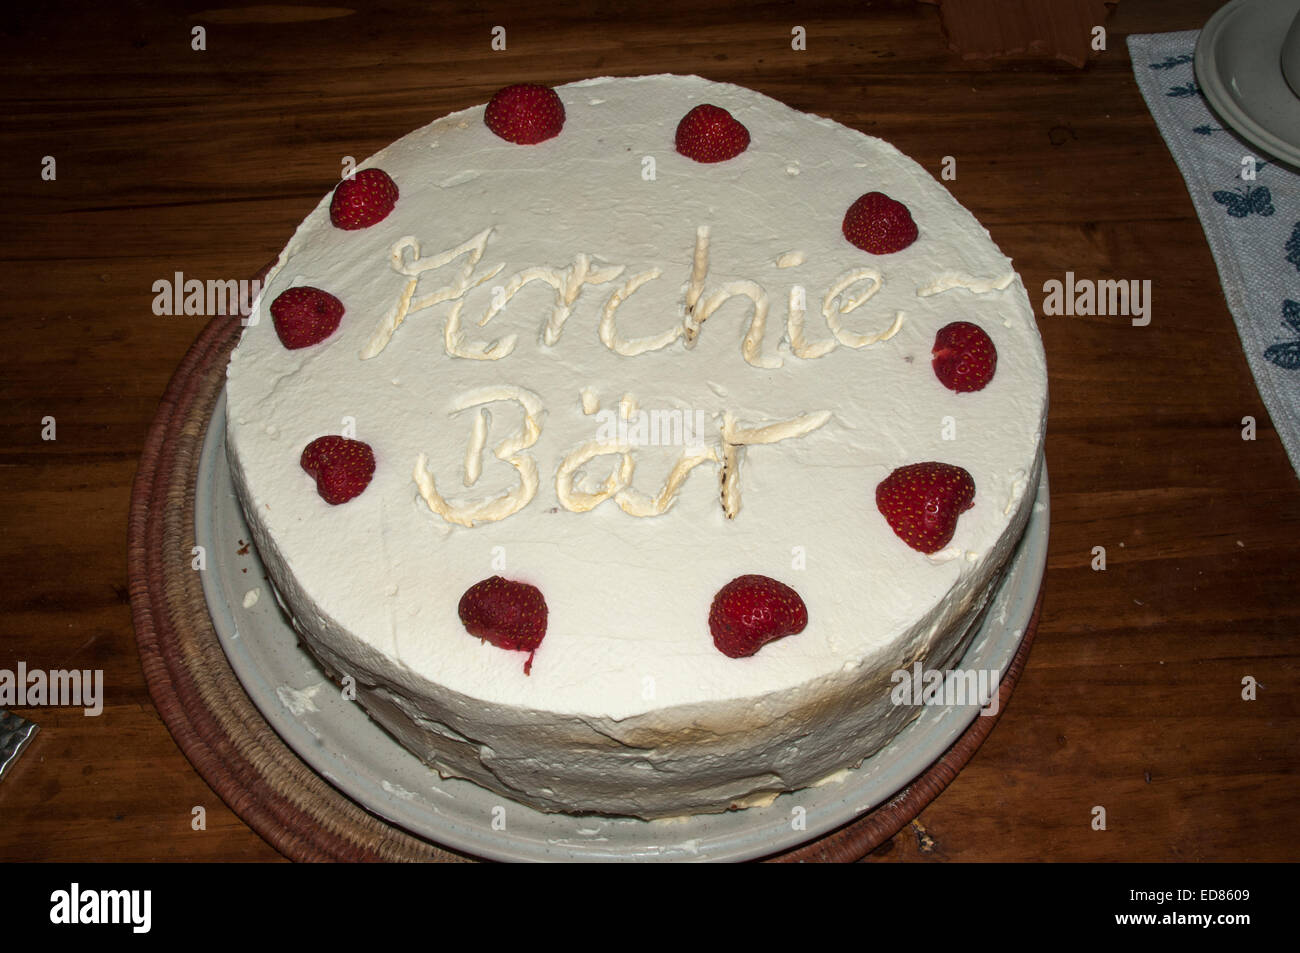 Home made cakes with decorative ornamenting elements.  Eine selbstgebackene Torte  mit einer netten Verzierung. Stock Photo